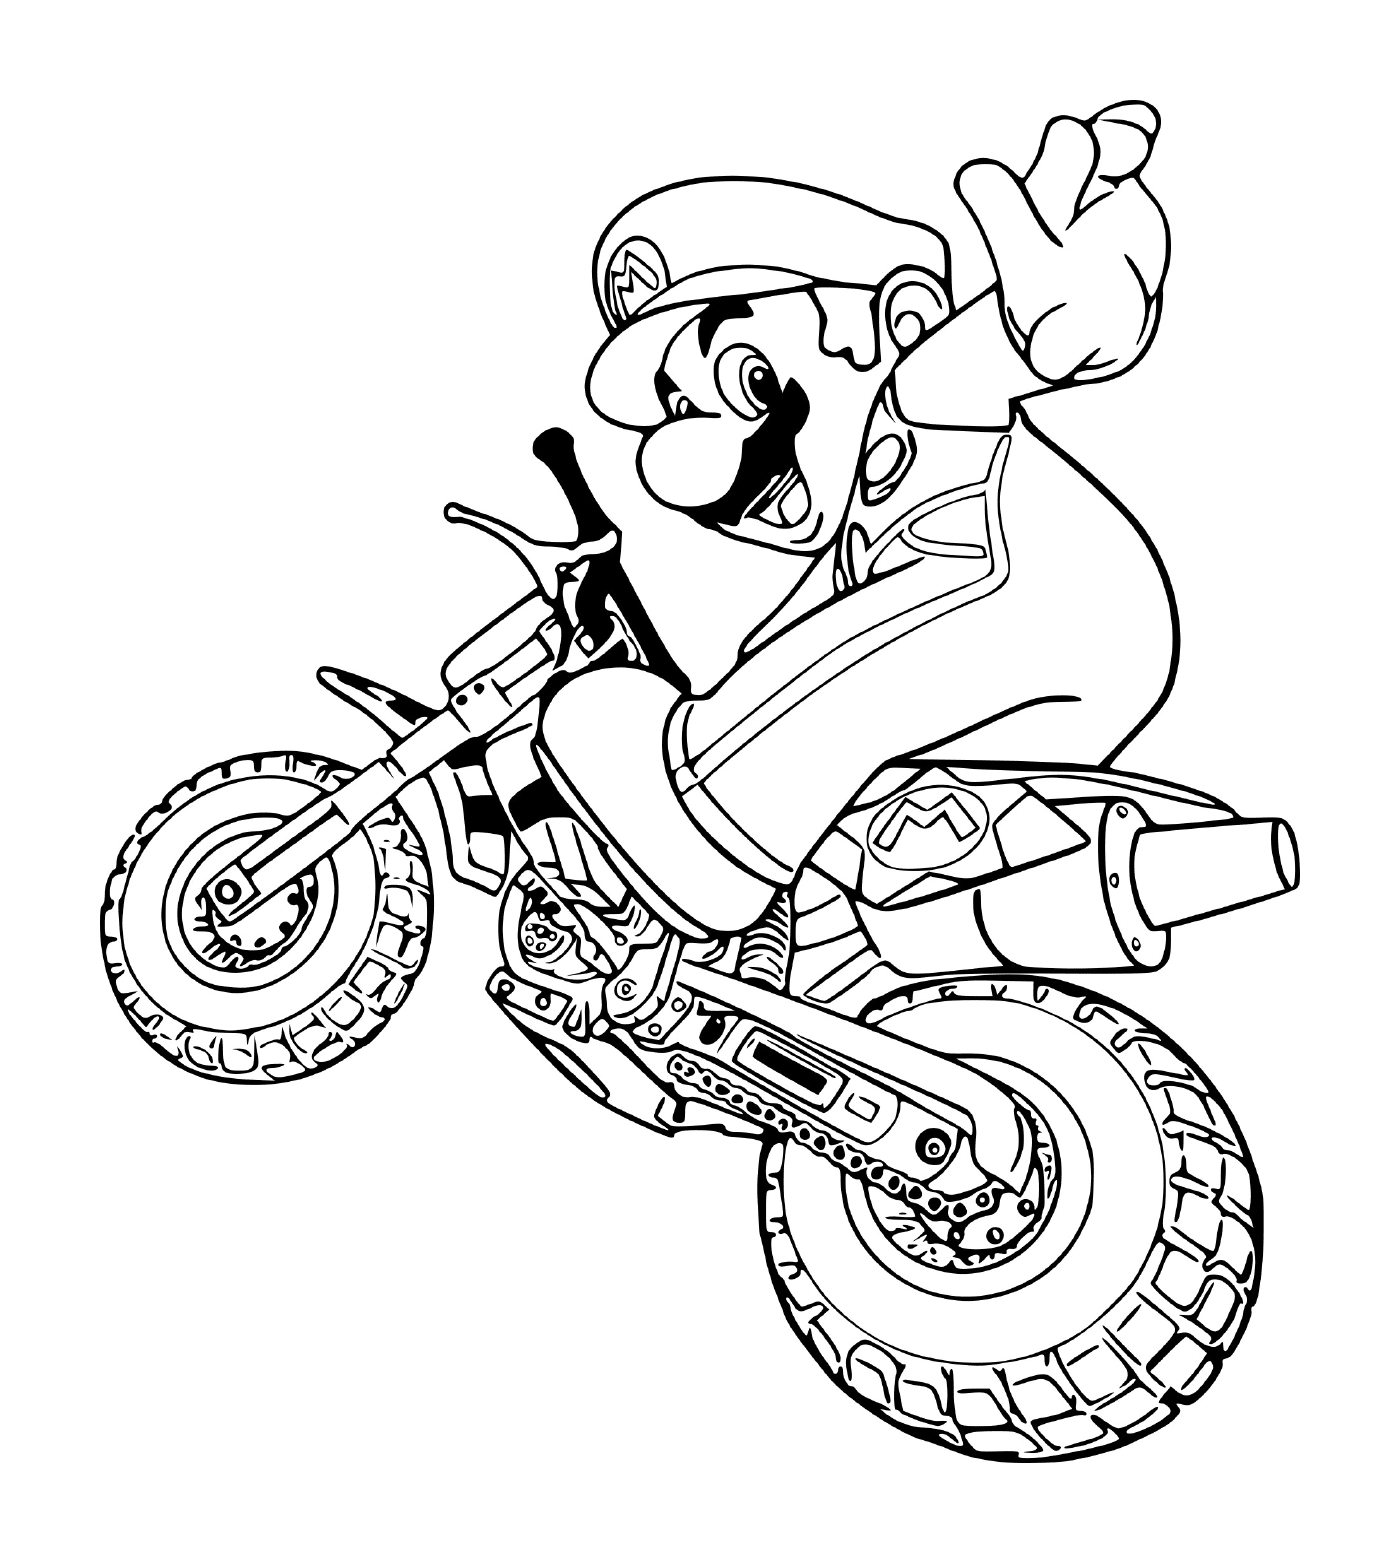  Mario em uma motocicleta 